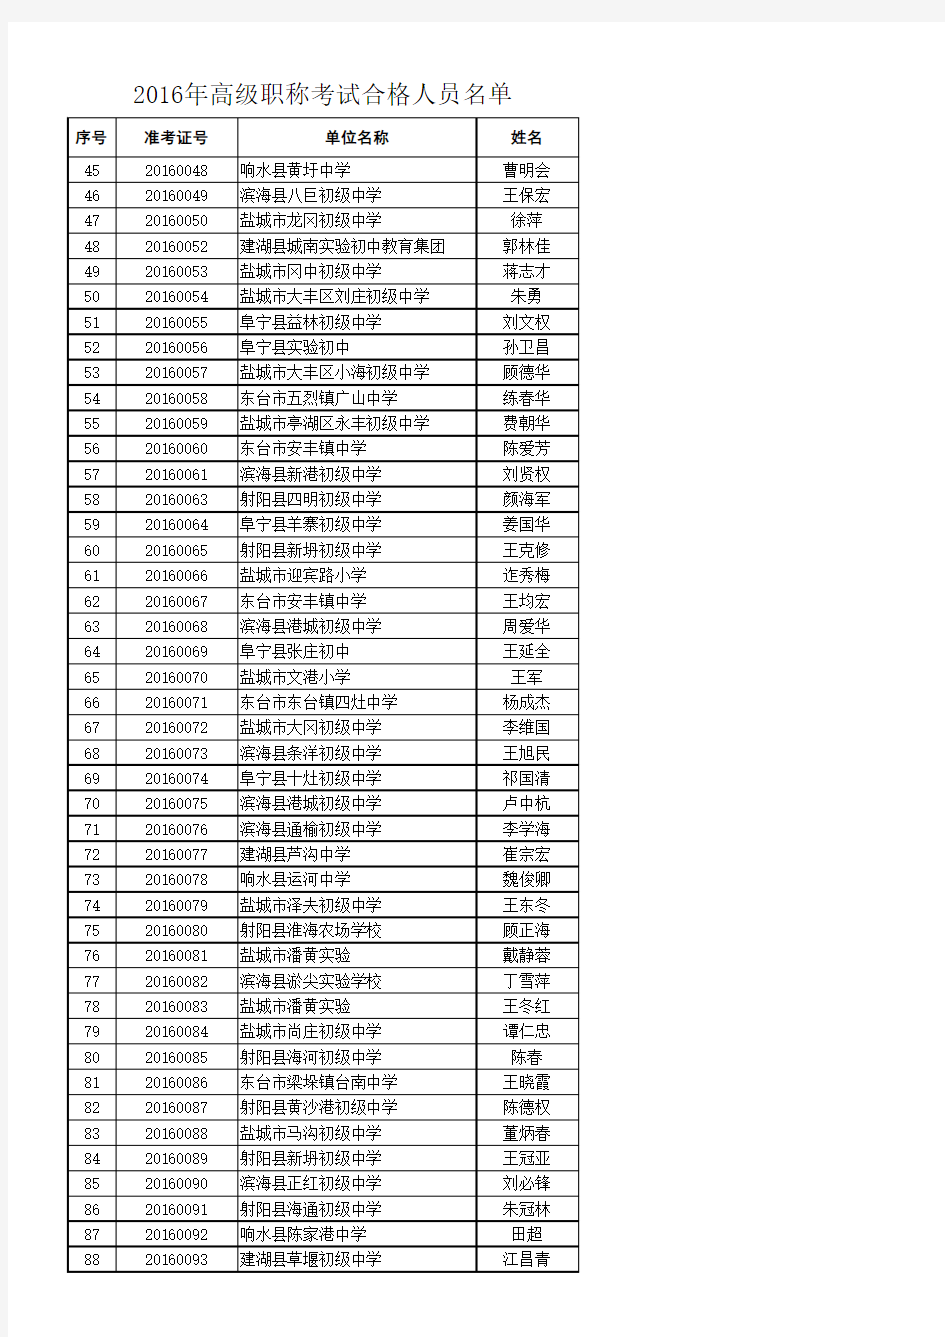 2016年高级职称考试合格人员名单(上网)